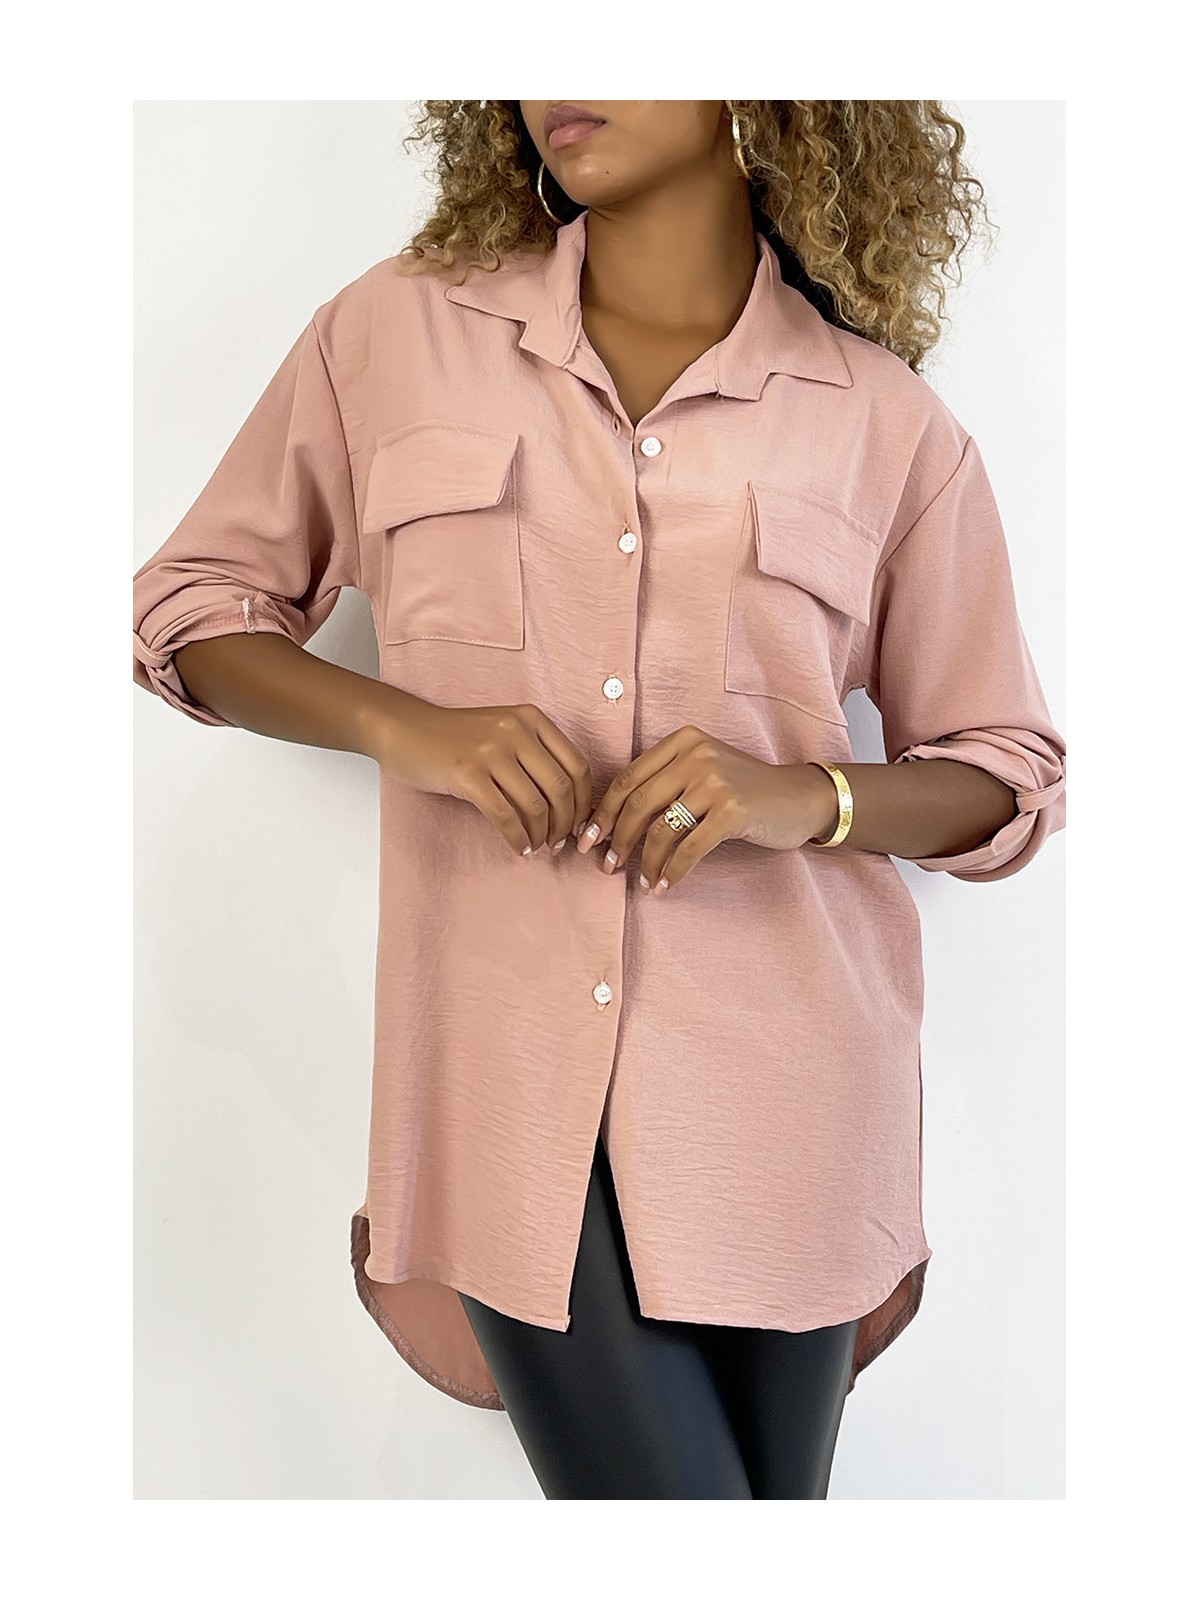 Chemise rose très chic avec poche au buste - 2